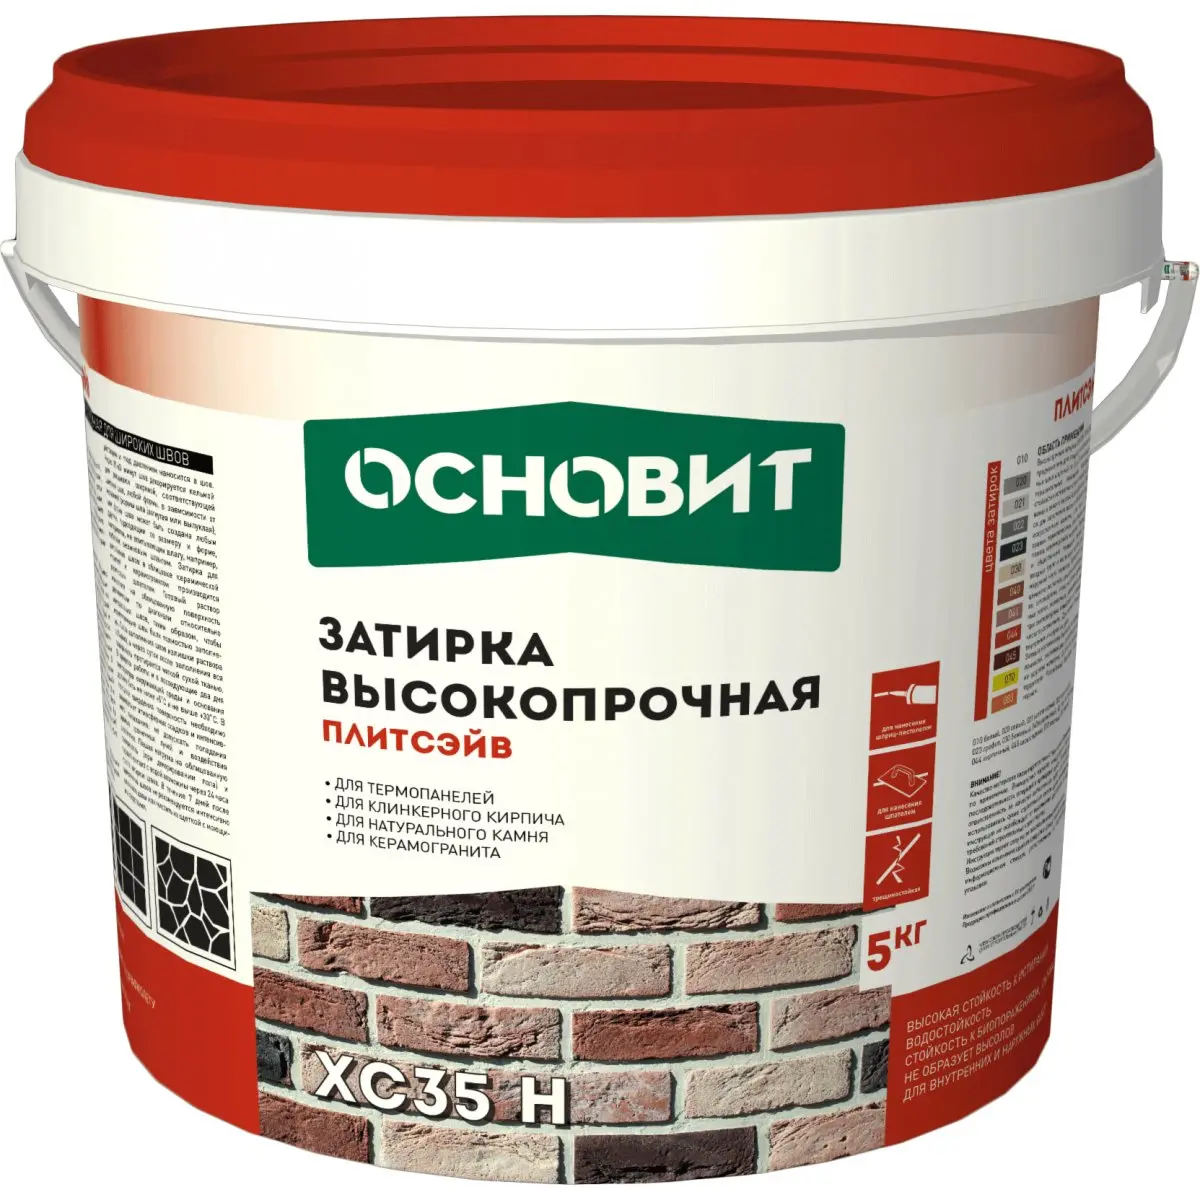 Затирка цементная Основит ПЛИТСЭЙВ XC35 H 010 белый (5 кг)